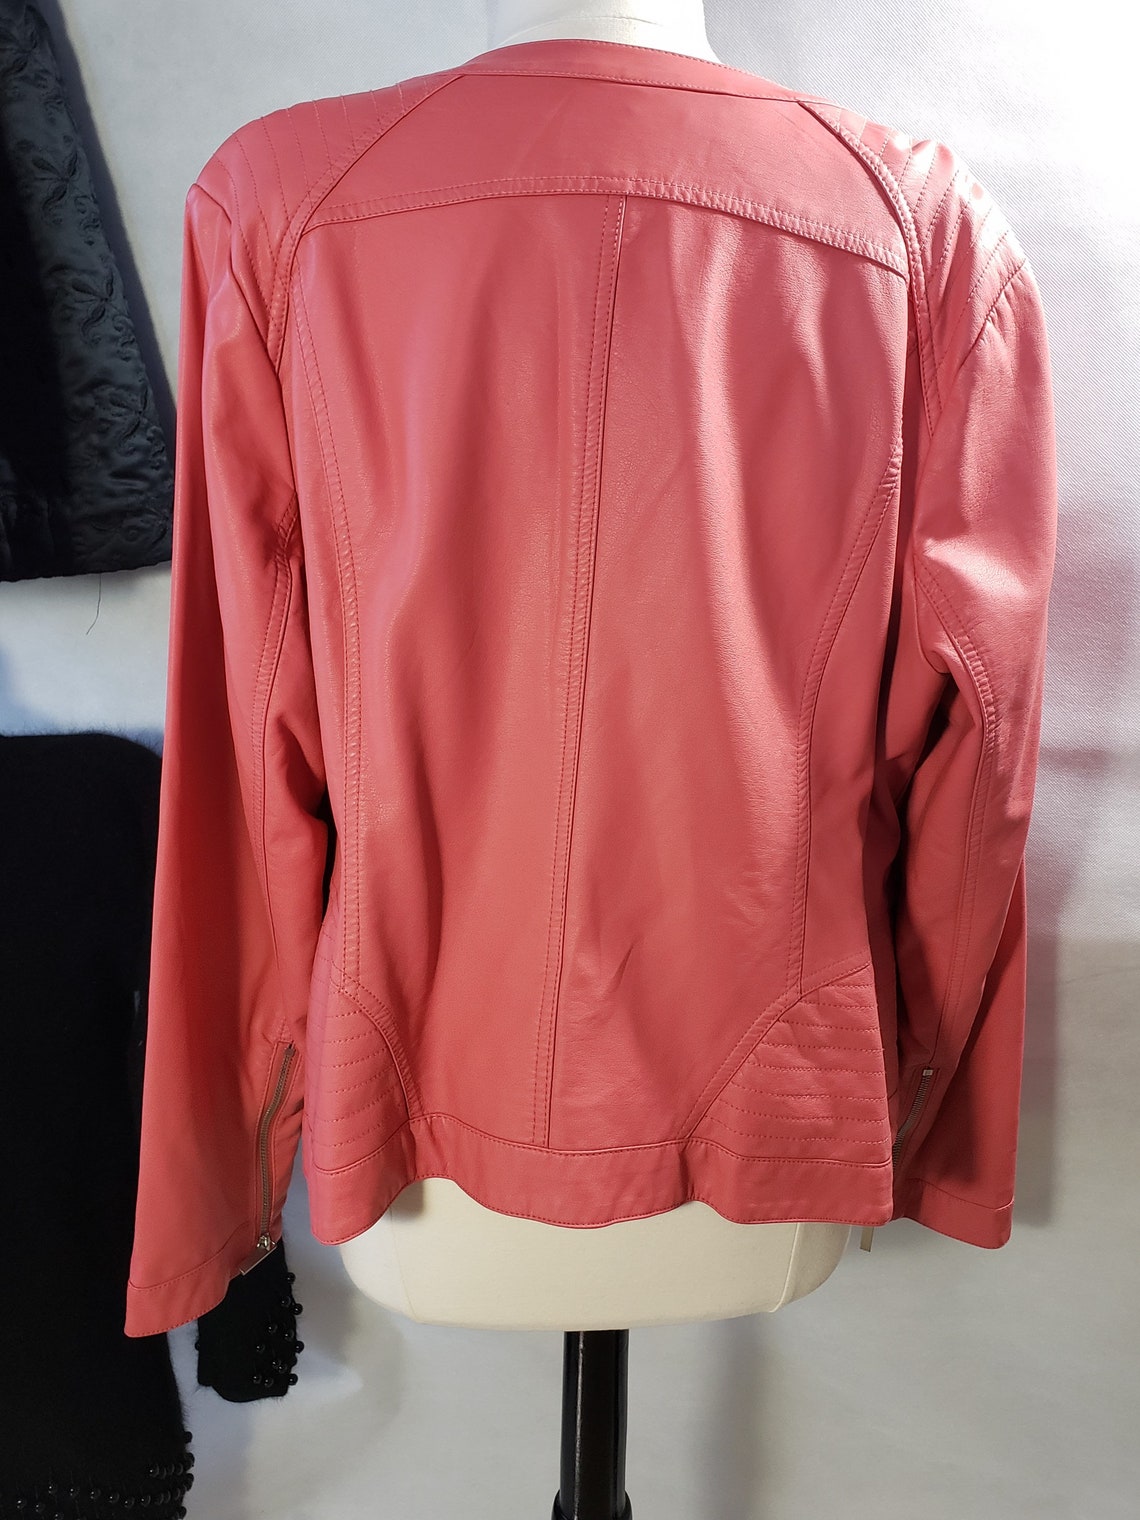 Faux Leather jacket Womens hot pink bomber jacket | Etsy